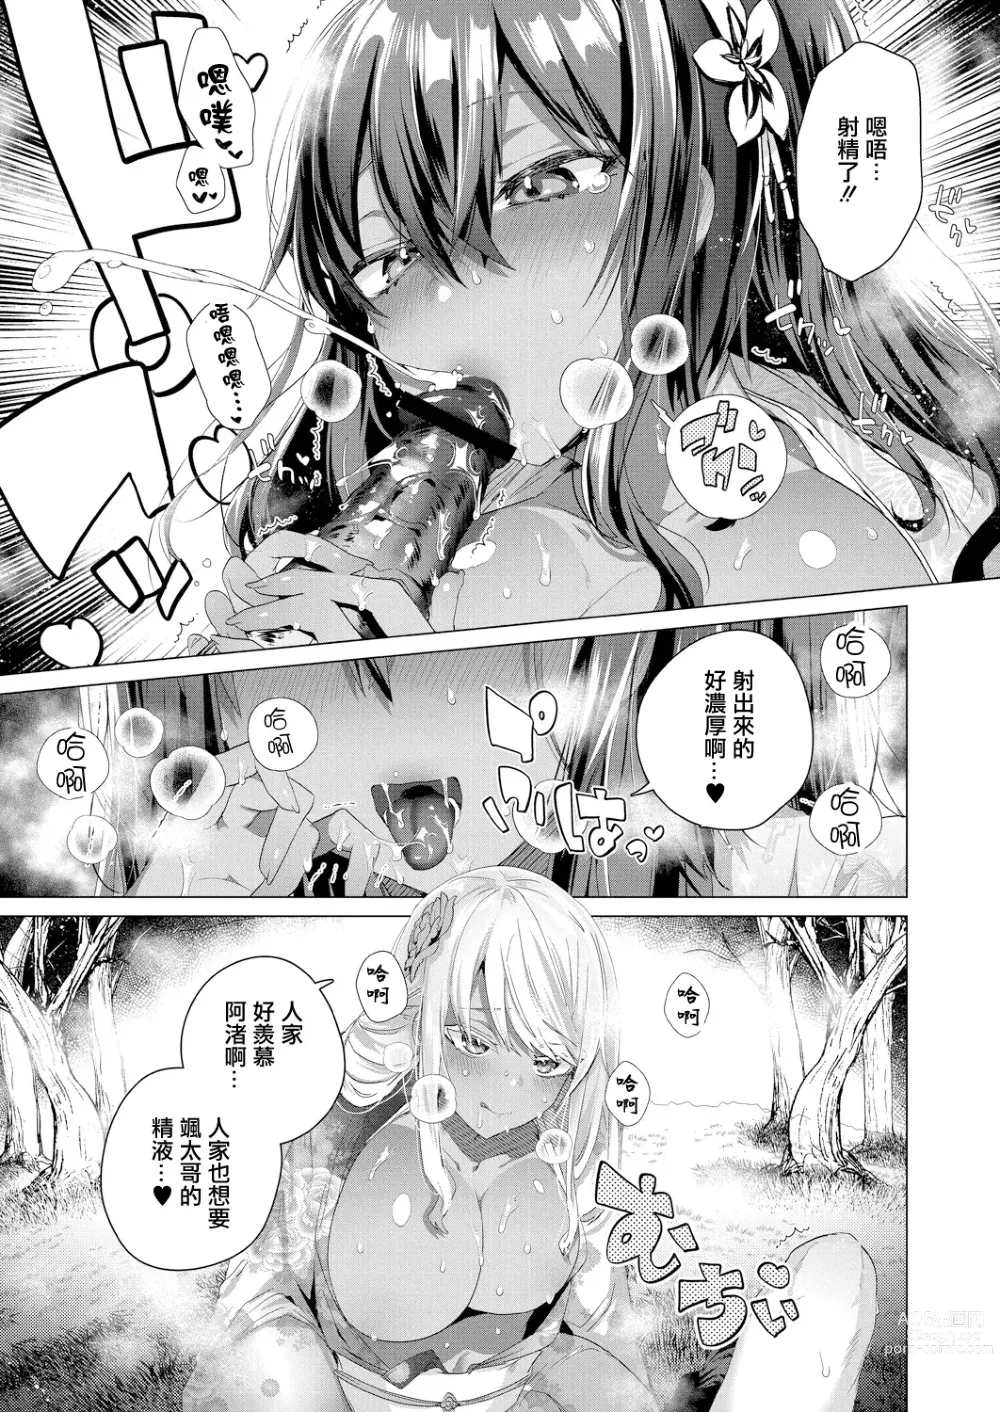 Page 7 of manga Komugiiro no Natsu-tachi Ch. 3